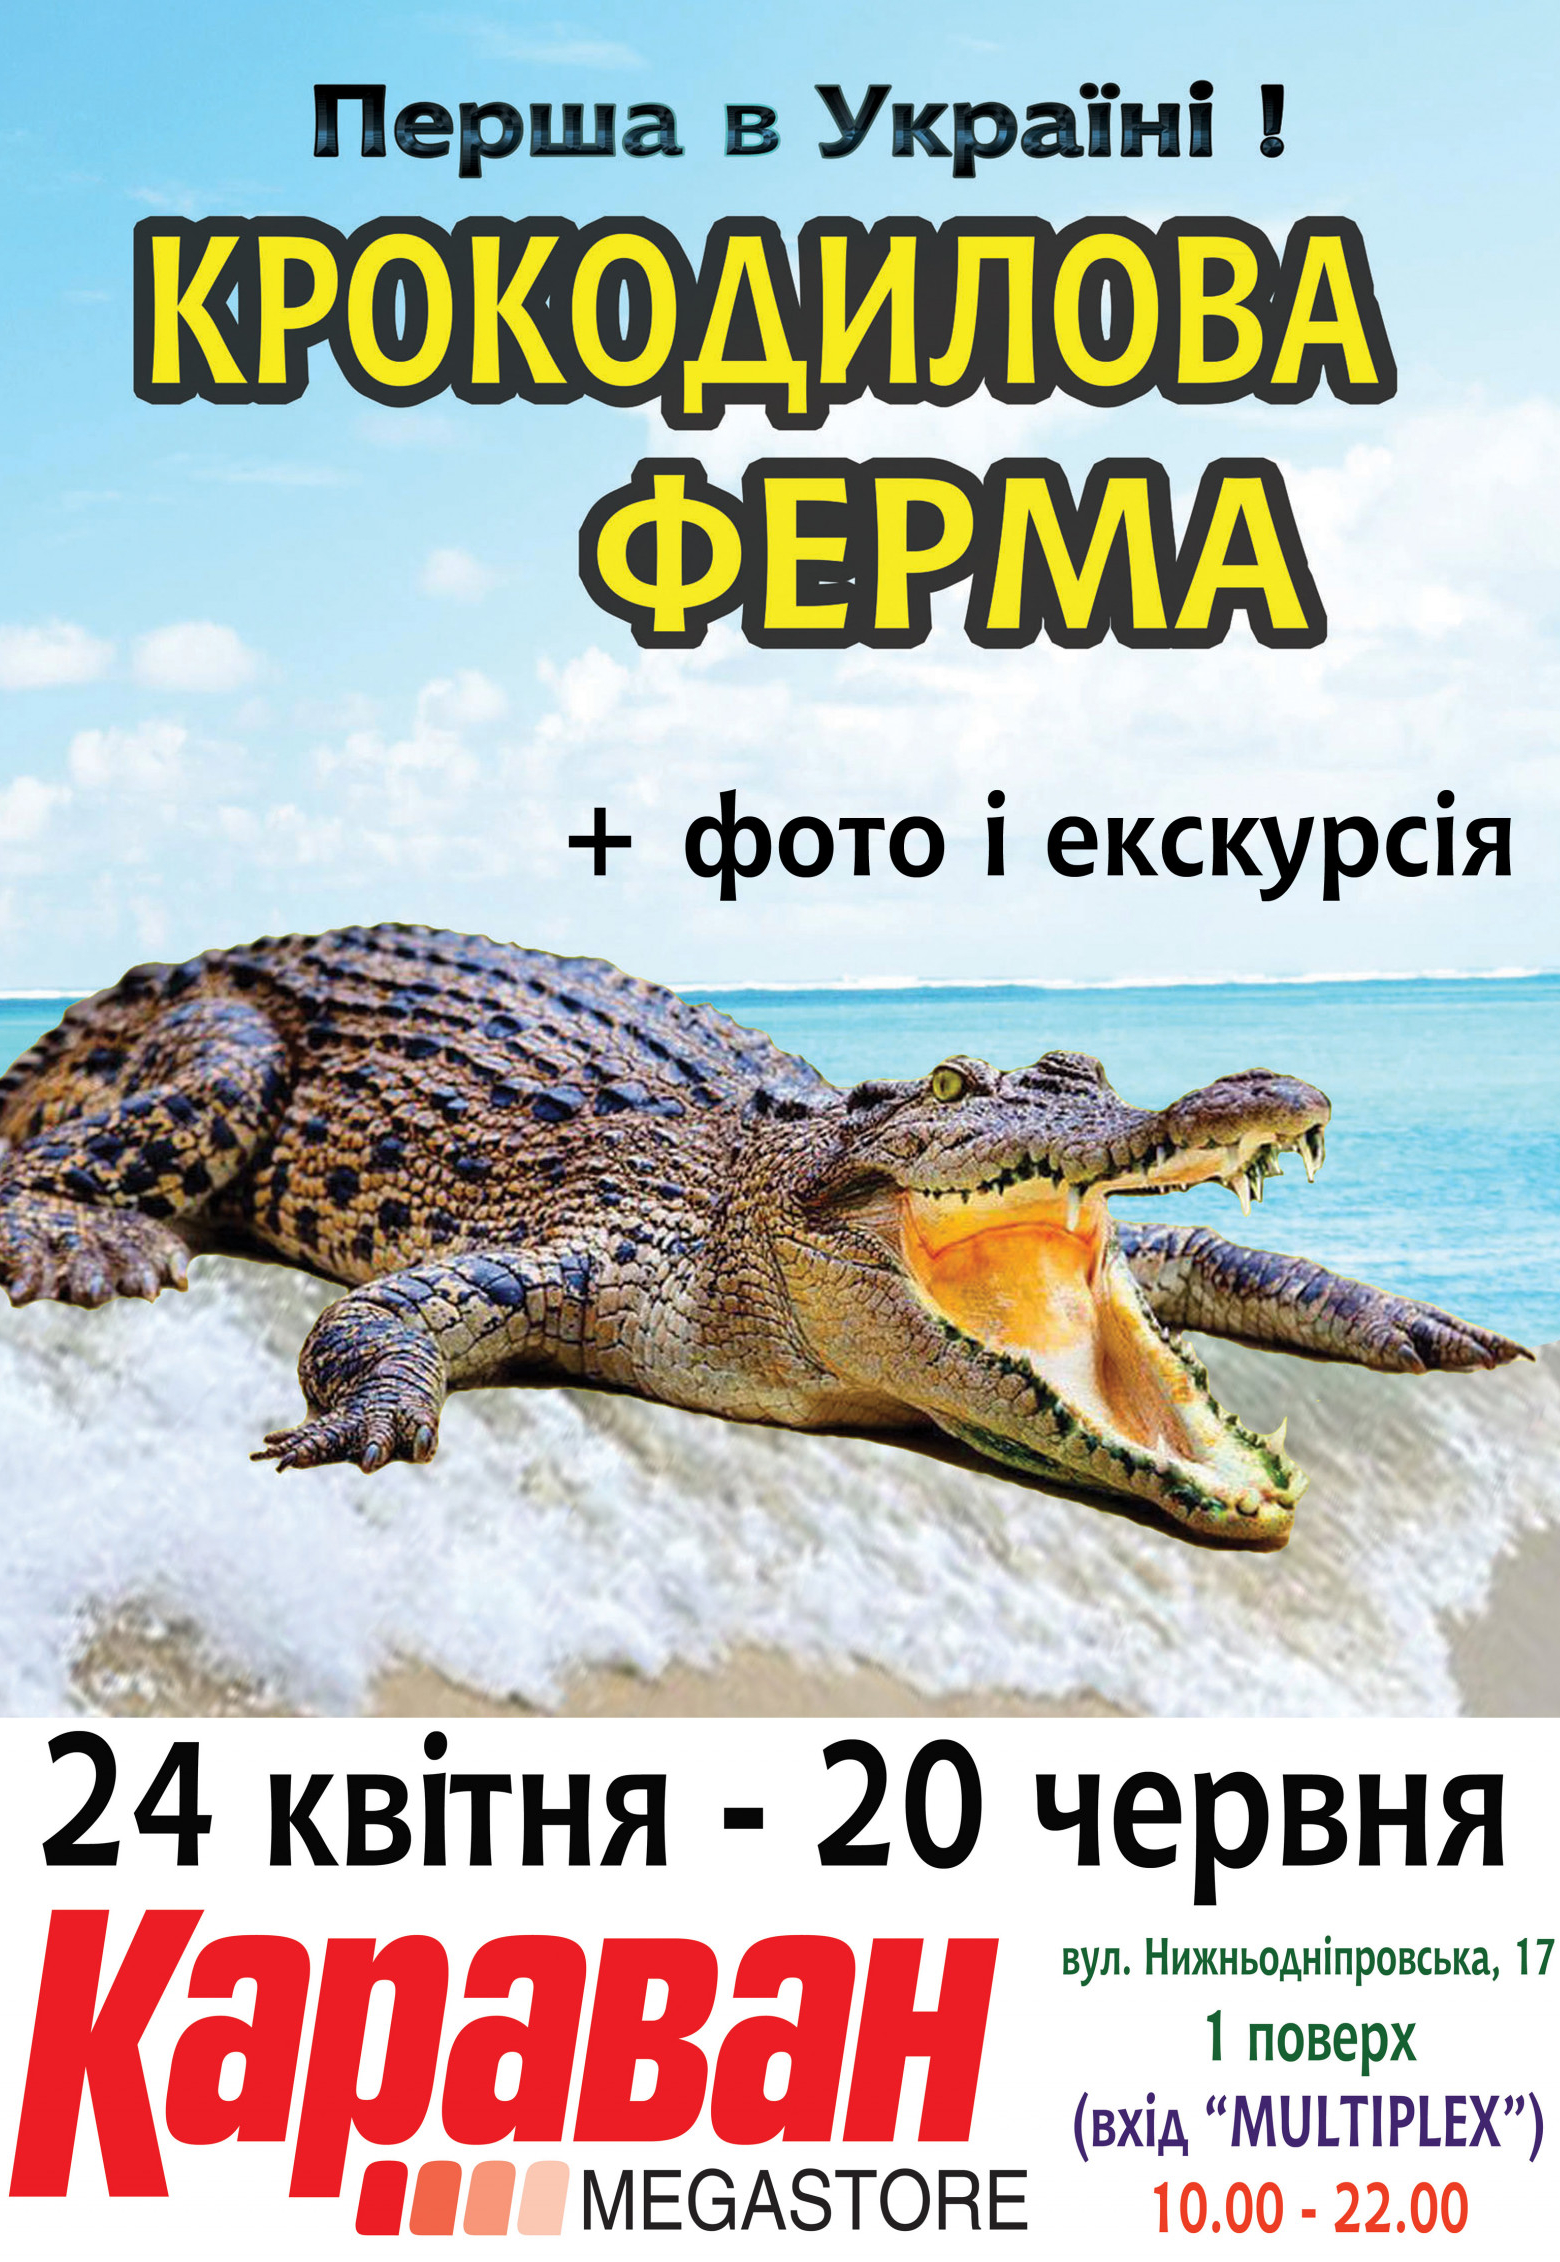 Крокодиловая ферма Днепр, 01.05.2021, купить билеты. Афиша Днепра